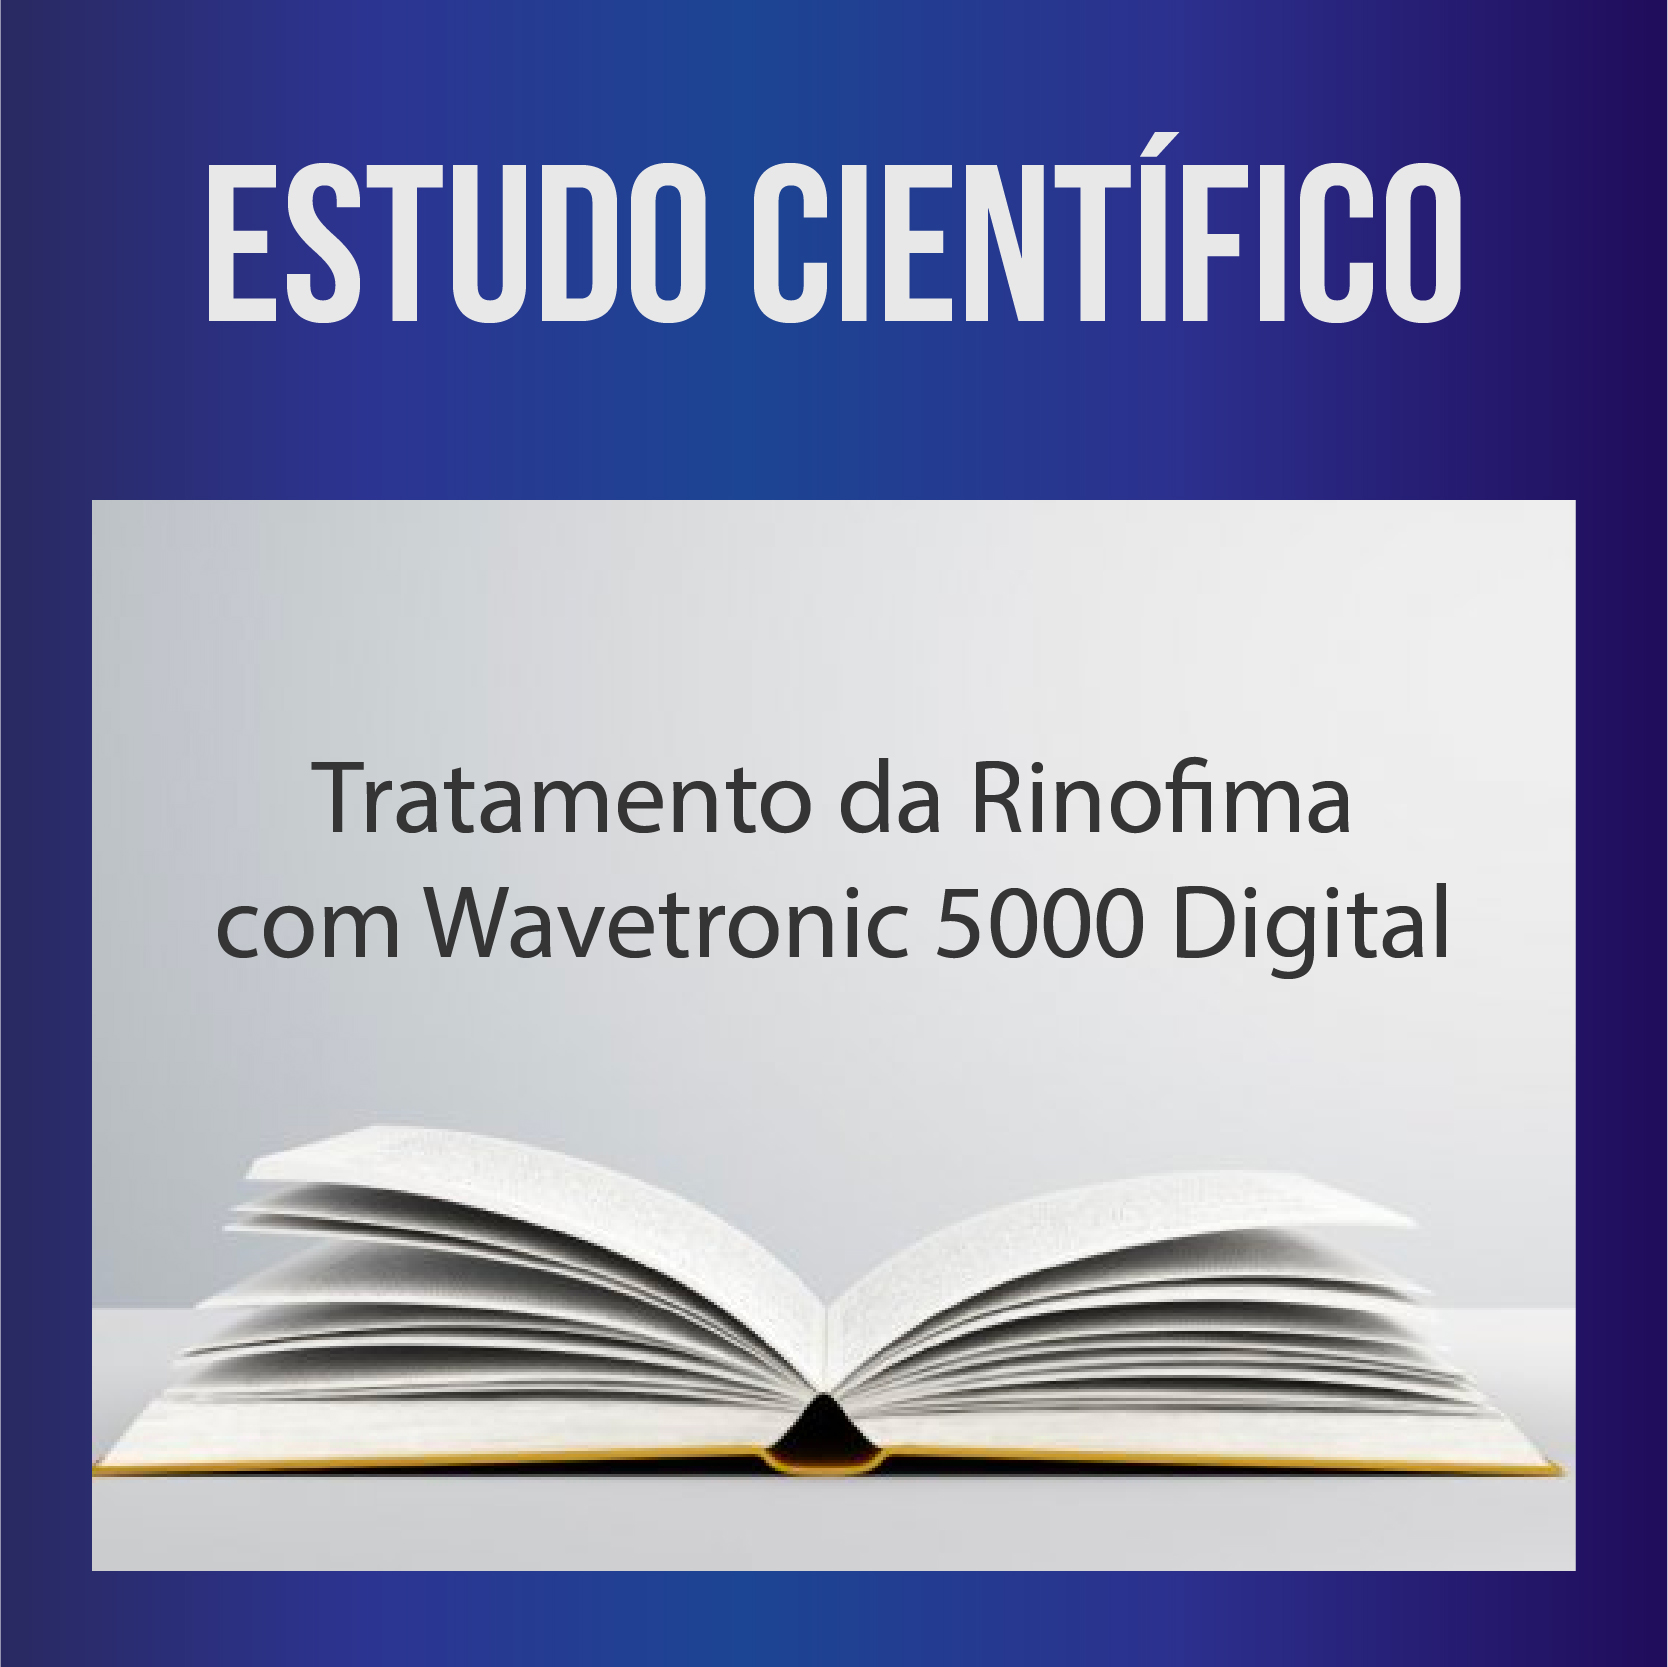 Tratamento da Rinofima com Wavetronic 5000 Digital